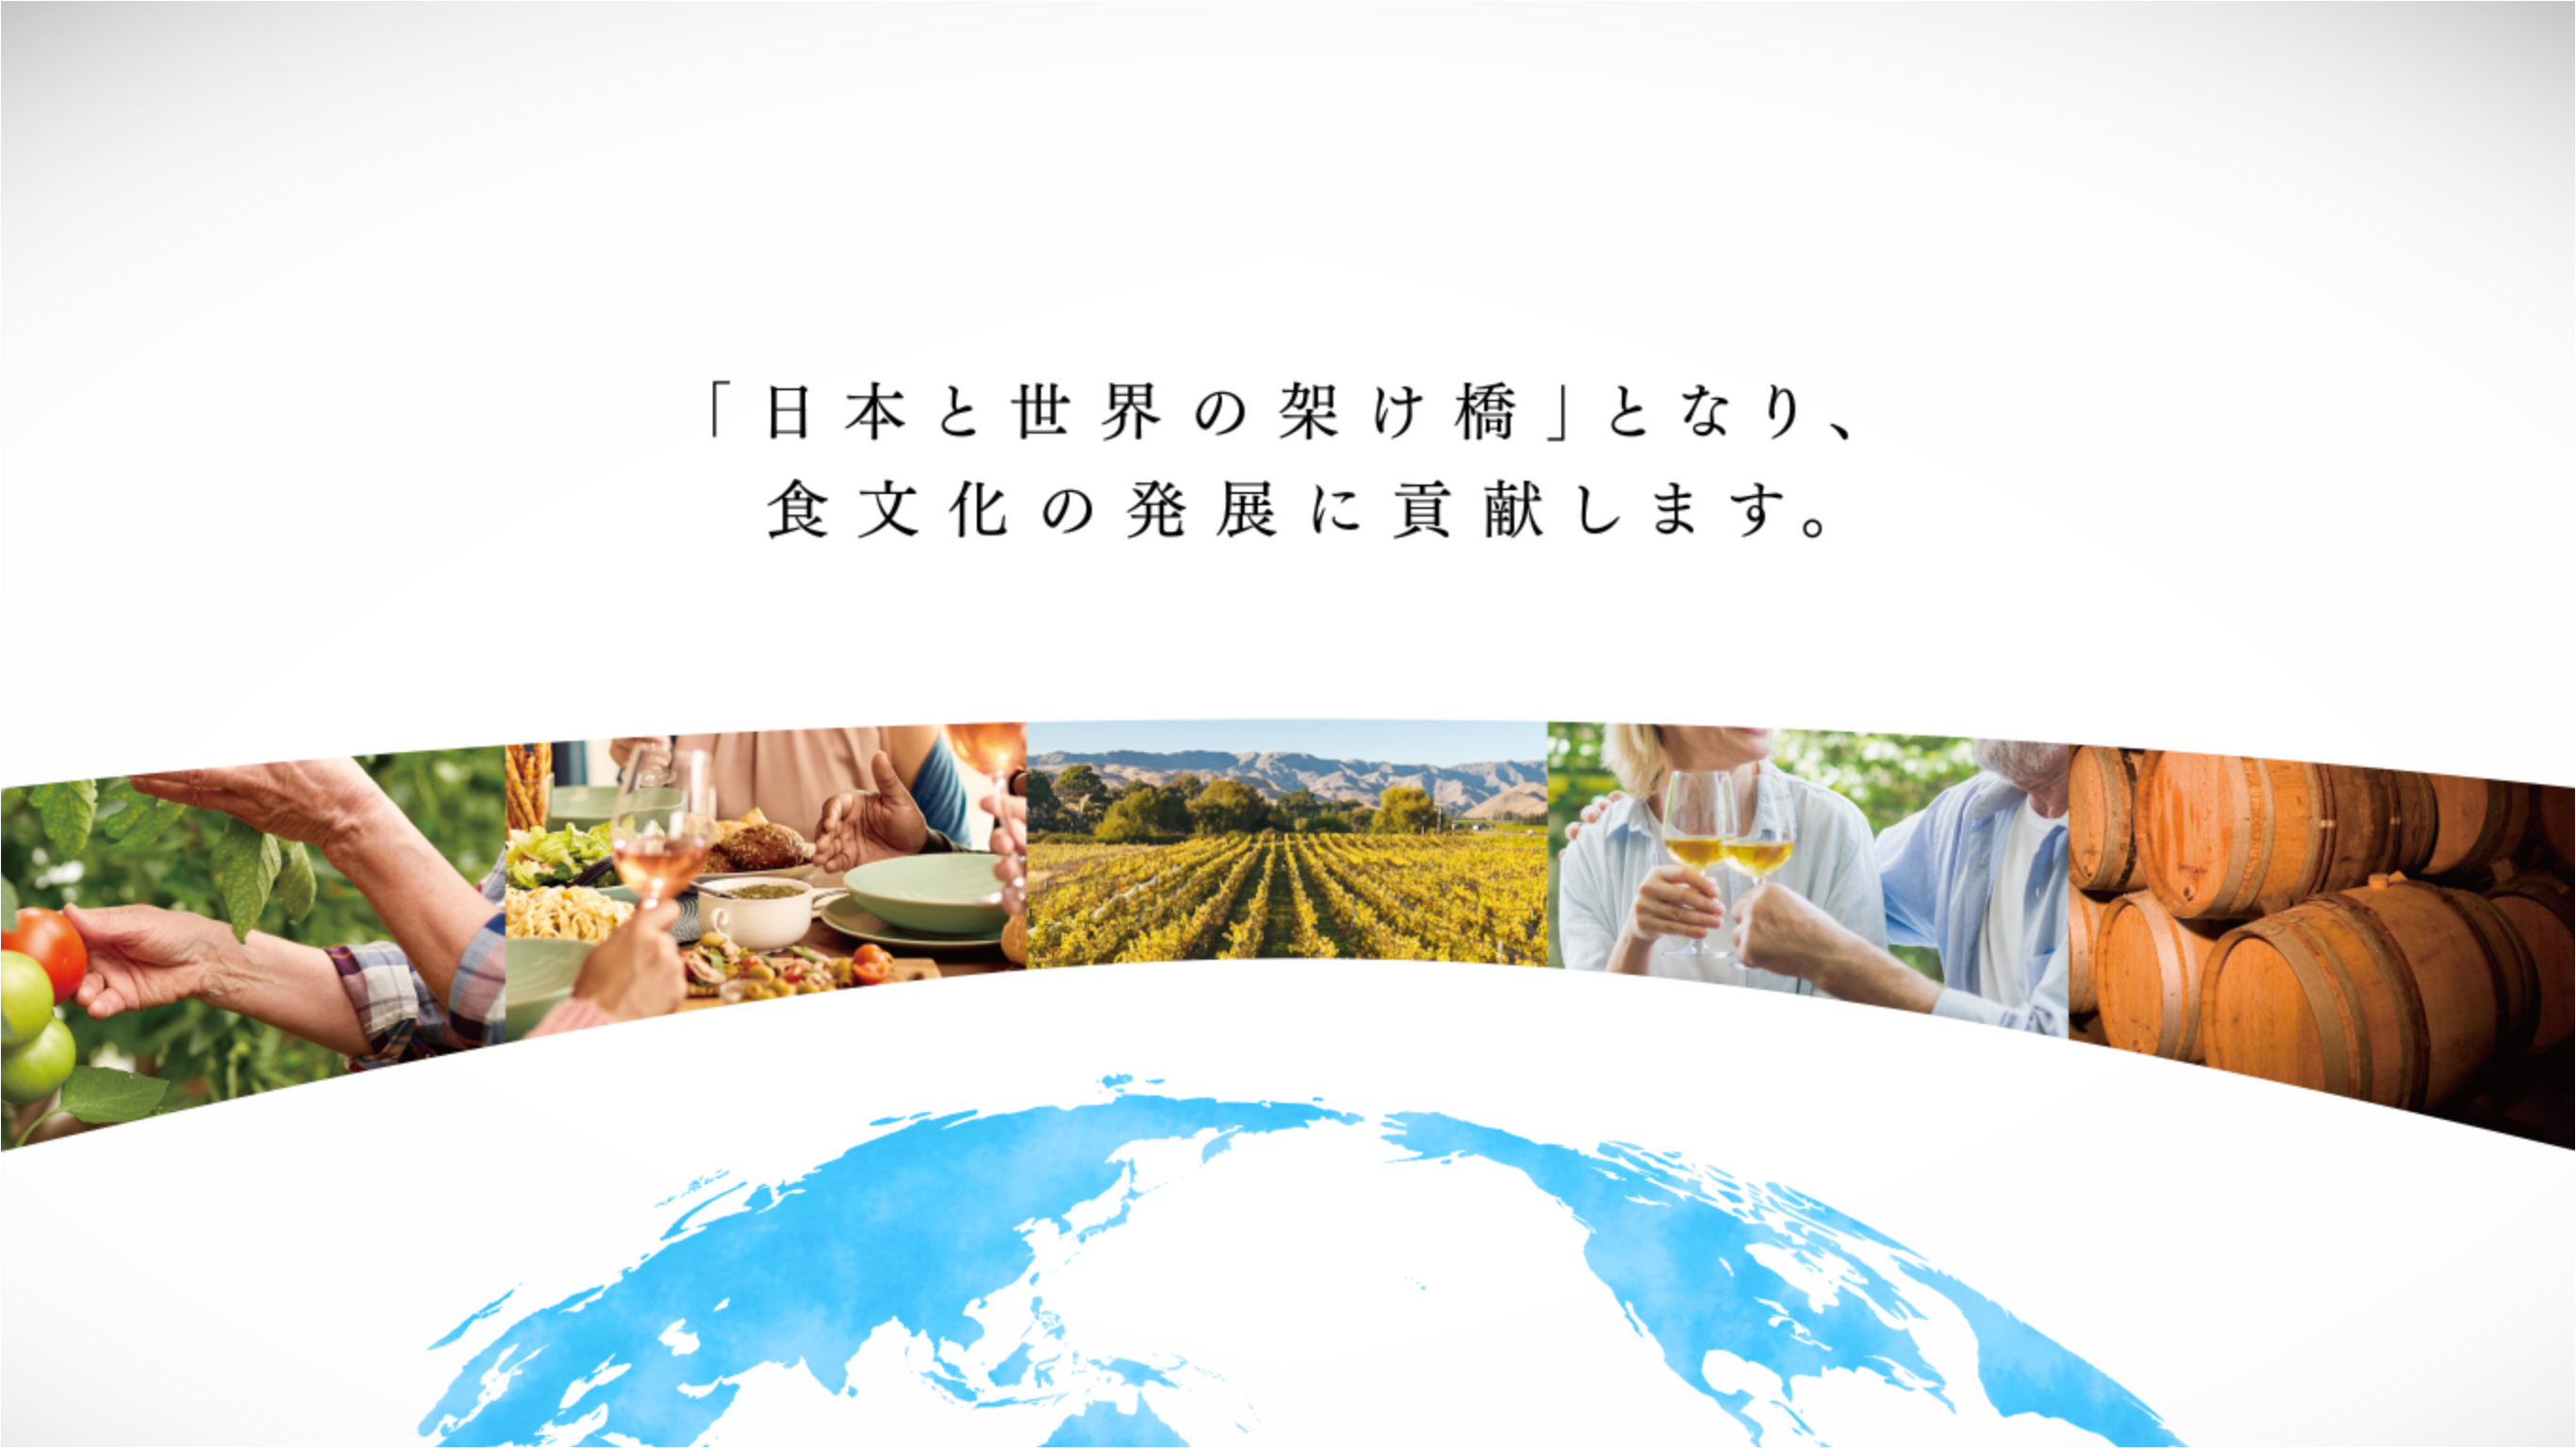 「日本と世界の架け橋」となり、食文化の発展に貢献します。